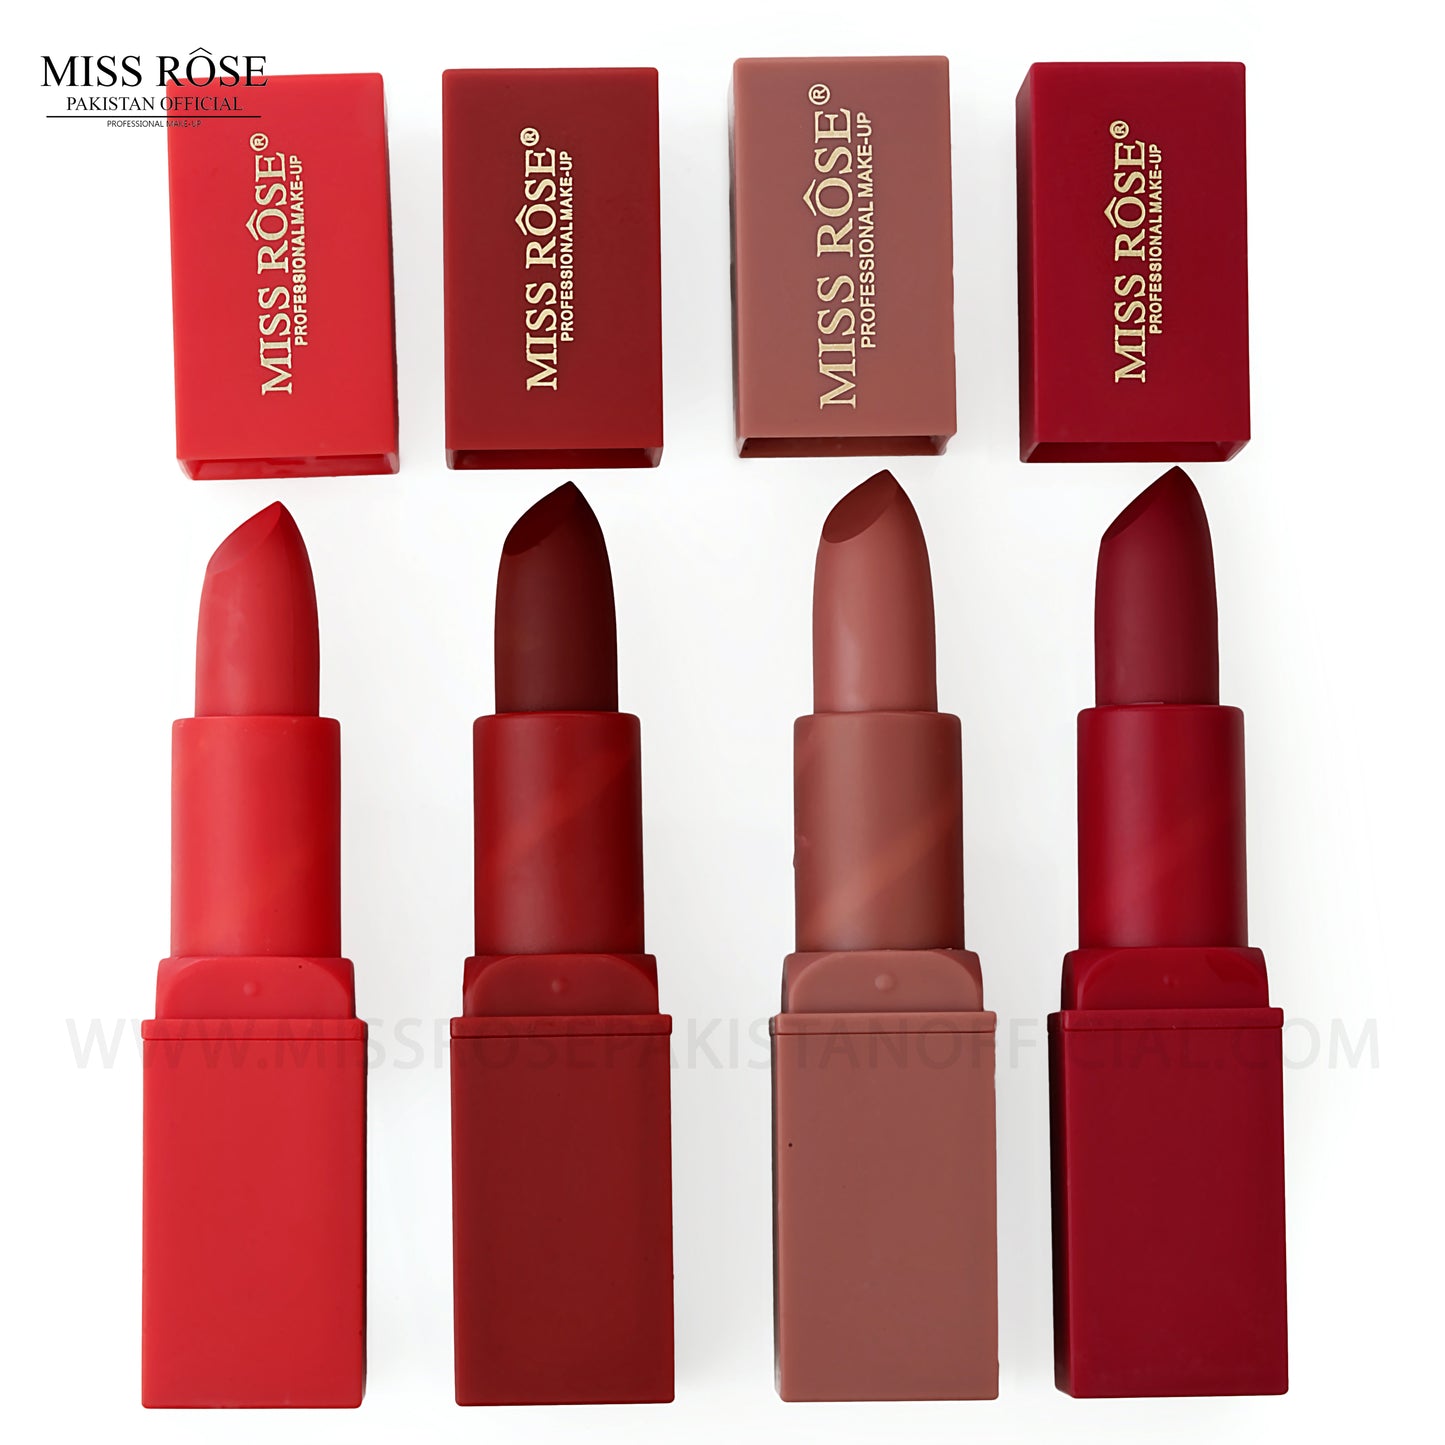 Miss Rose Vitamin E Lipsticks